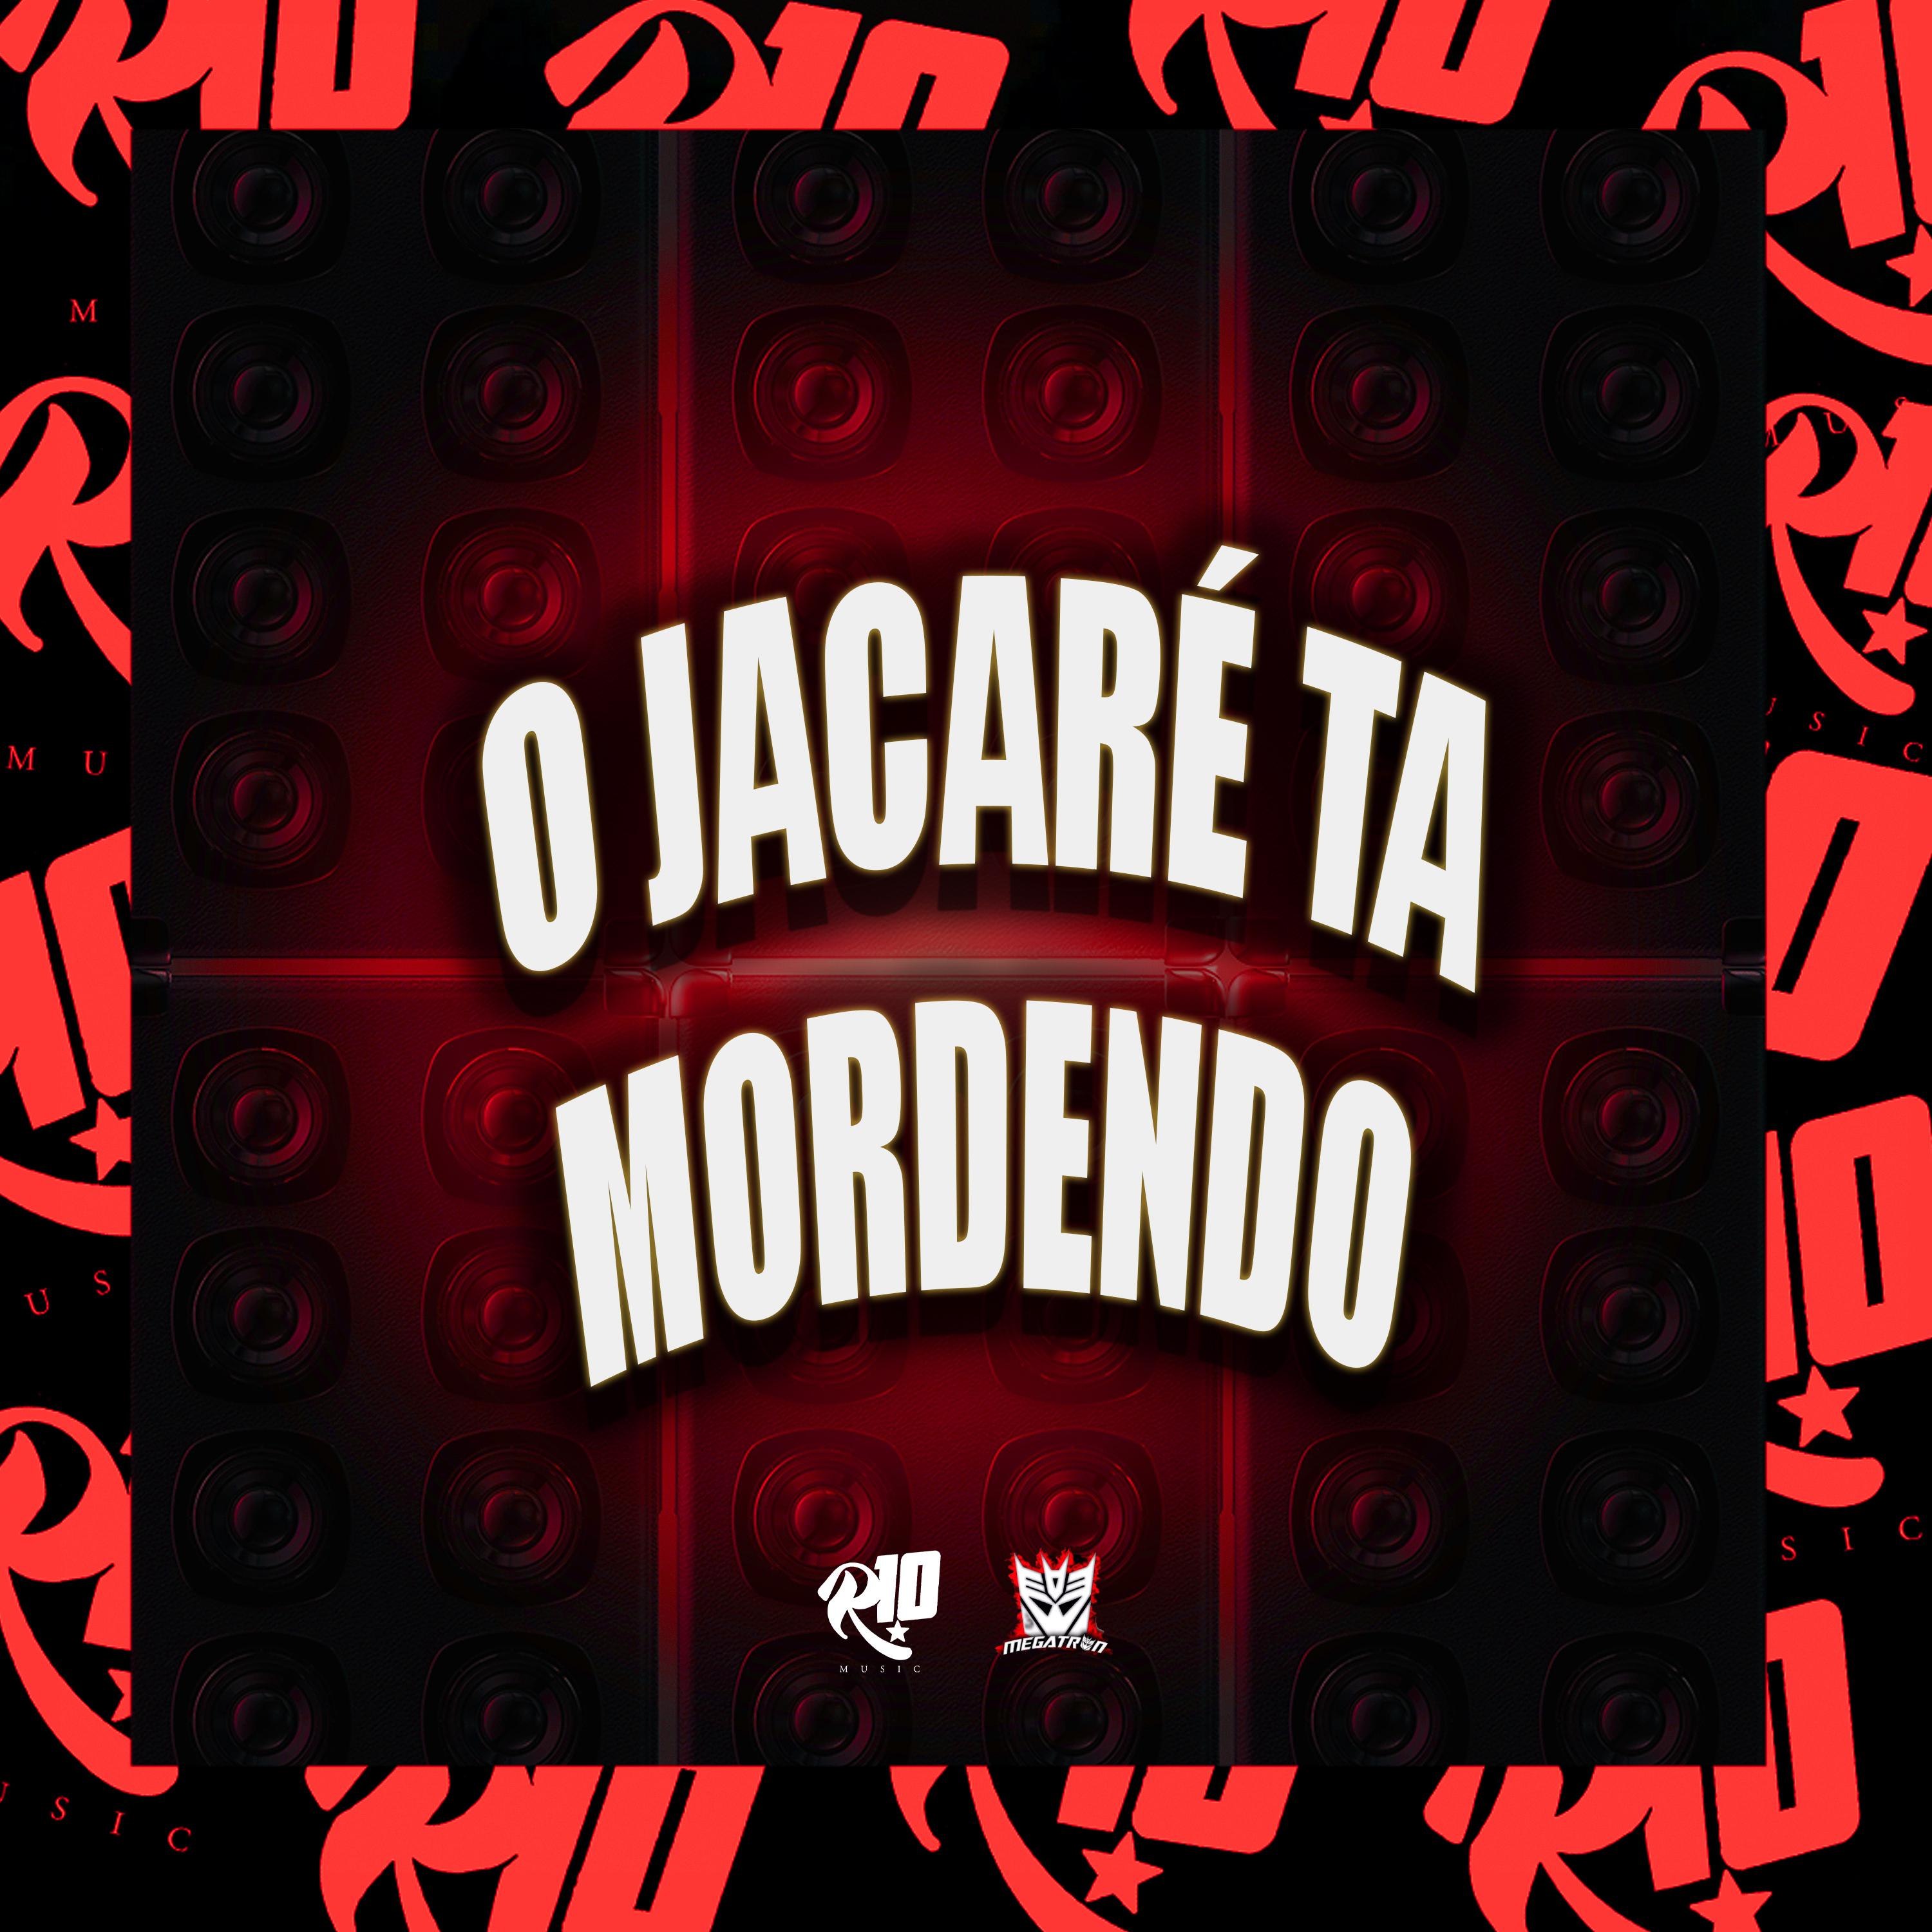 Постер альбома O Jacaré Ta Mordendo